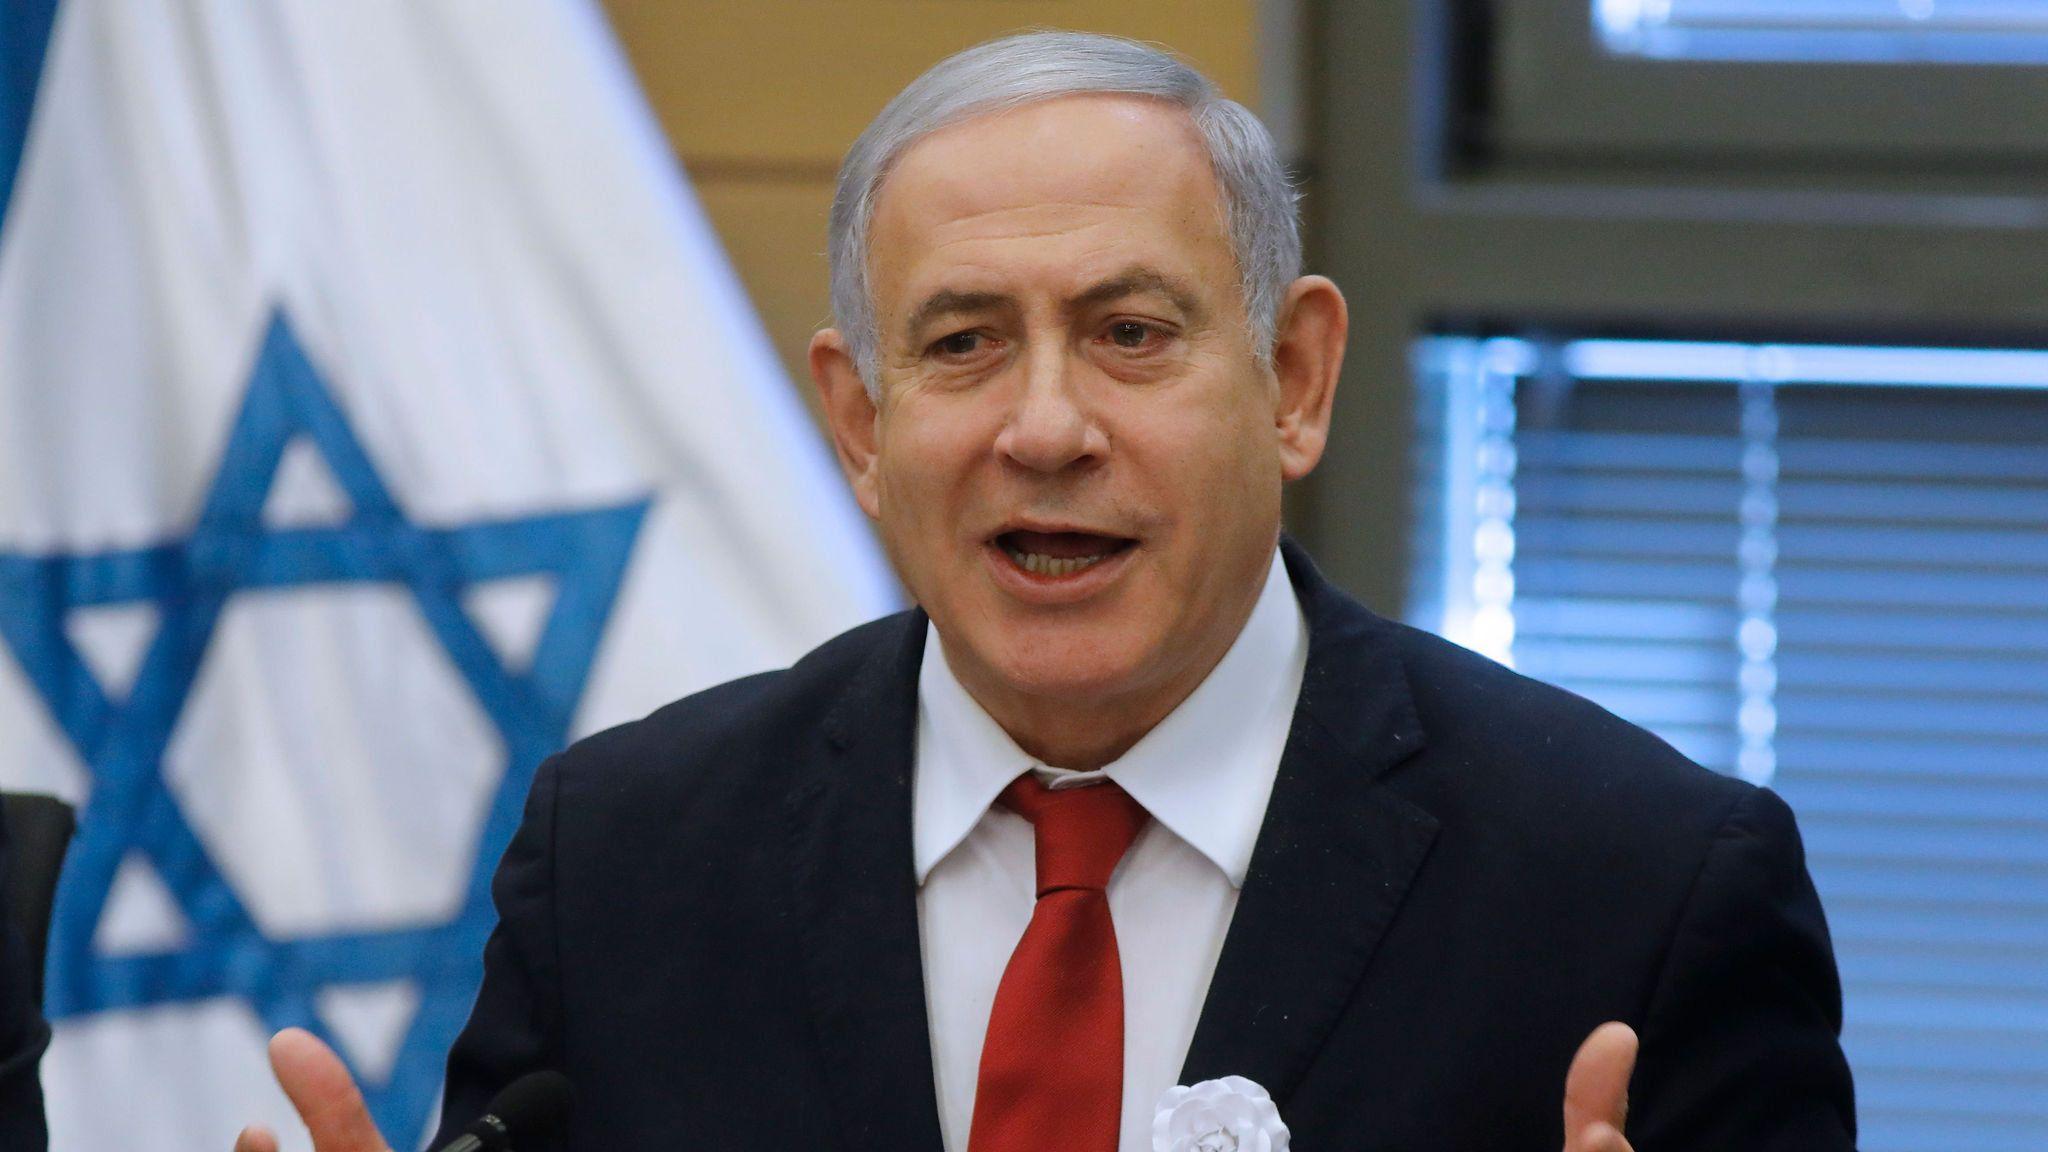 Benjamín Netanyahu Wallpapers - Top Free Benjamín Netanyahu Backgrounds ...